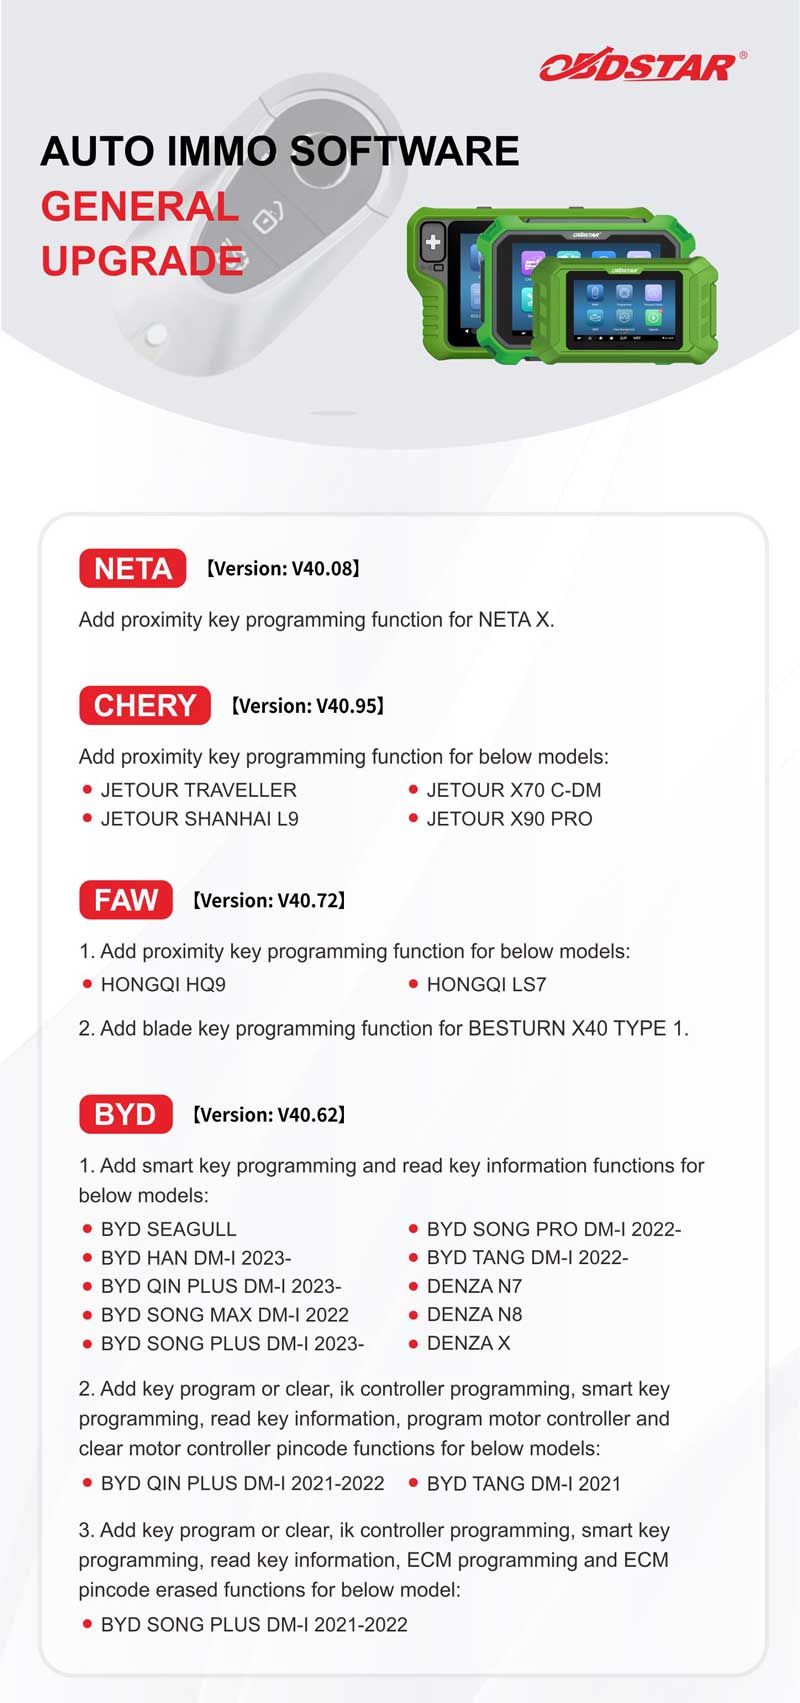 OBDSTAR key programming function June upgrade summary